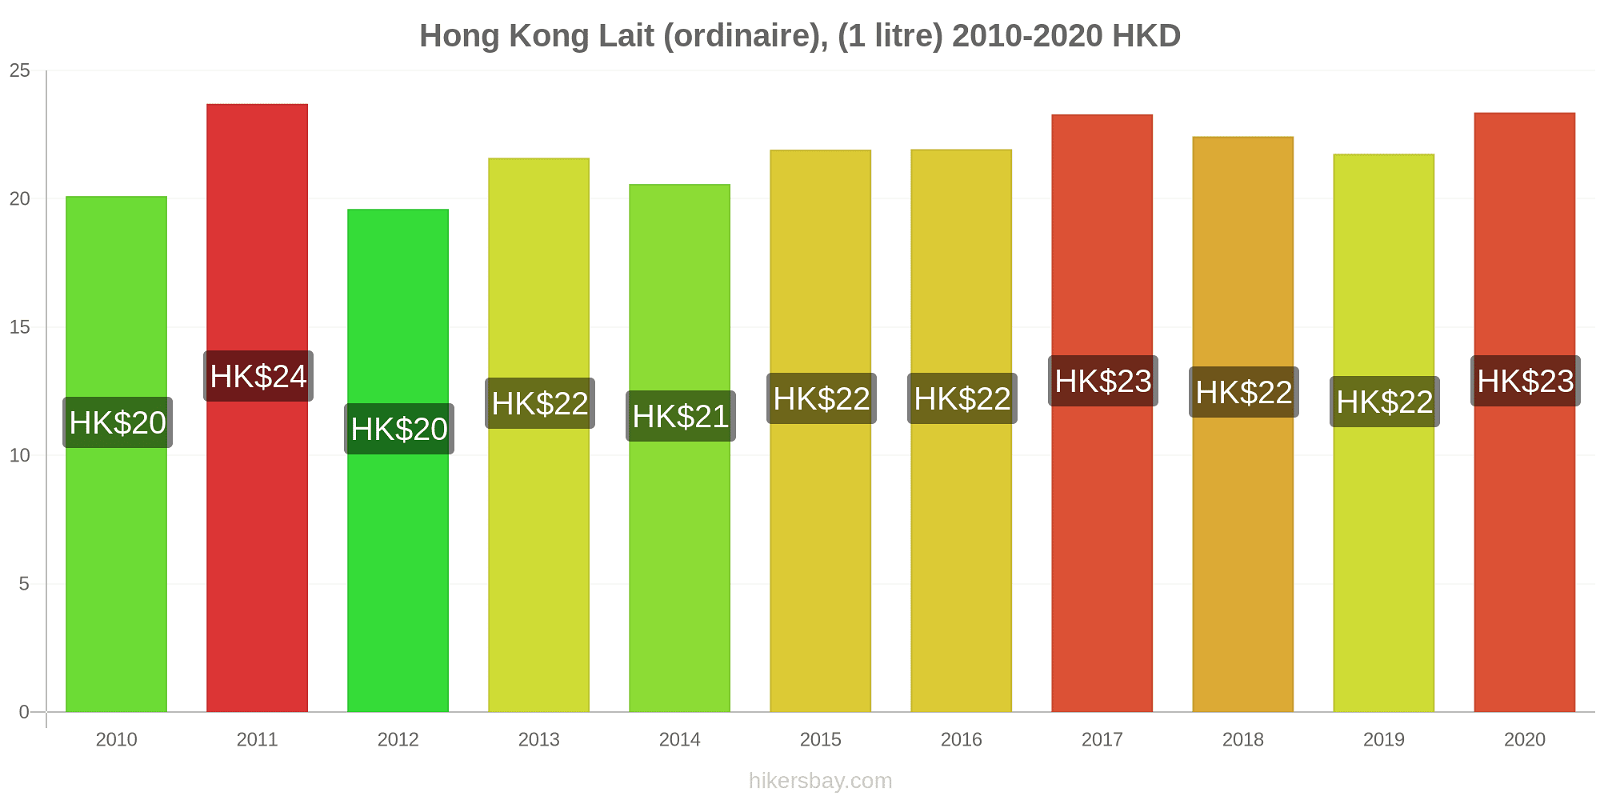 Hong Kong changements de prix (Régulier), lait (1 litre) hikersbay.com